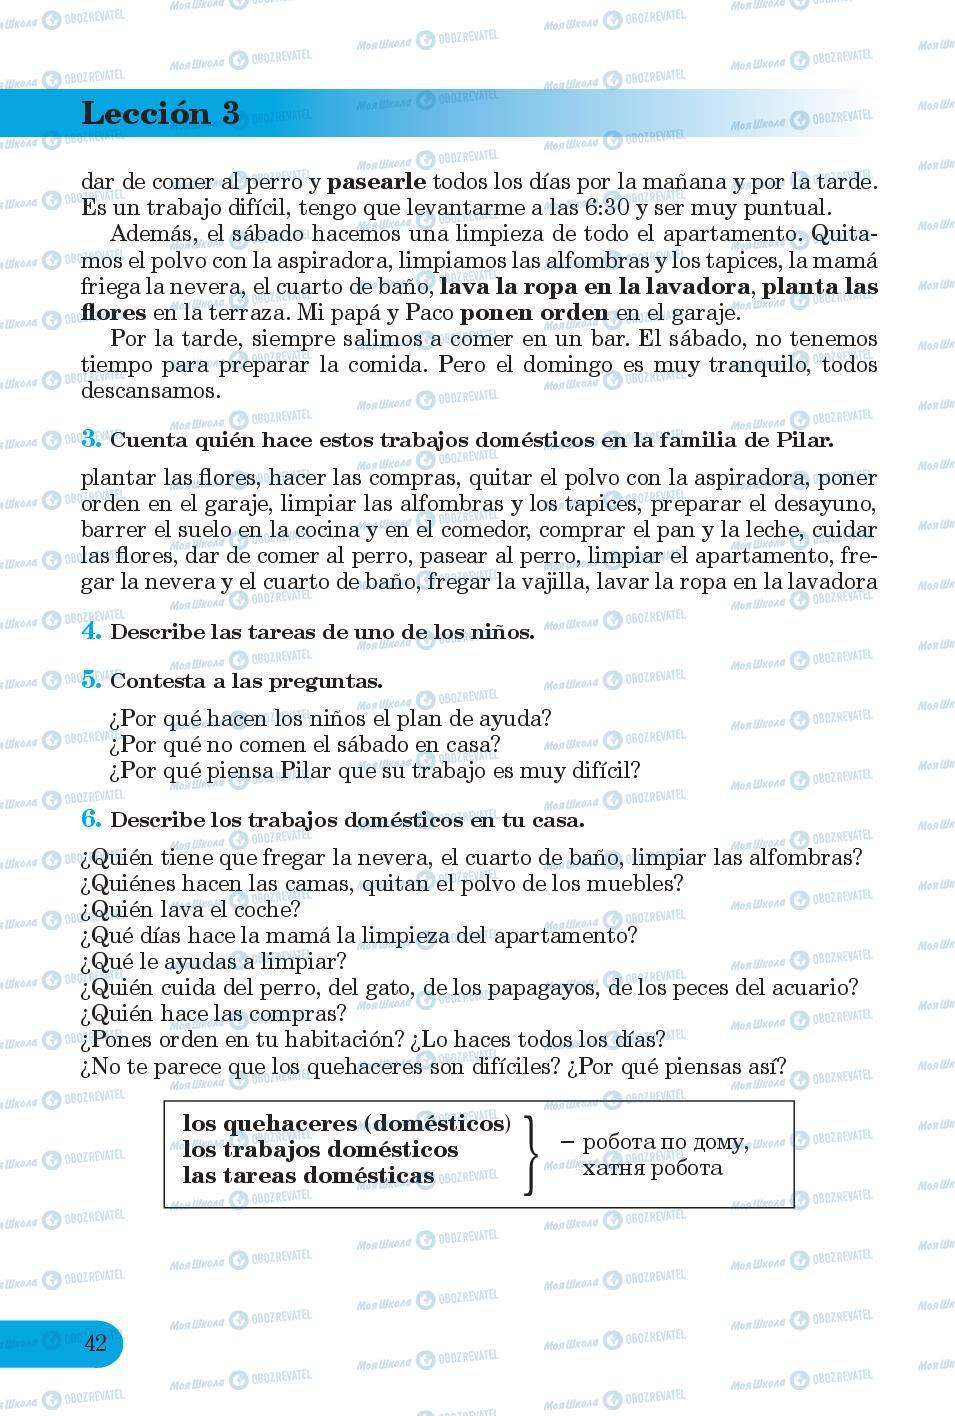 Підручники Іспанська мова 6 клас сторінка 42